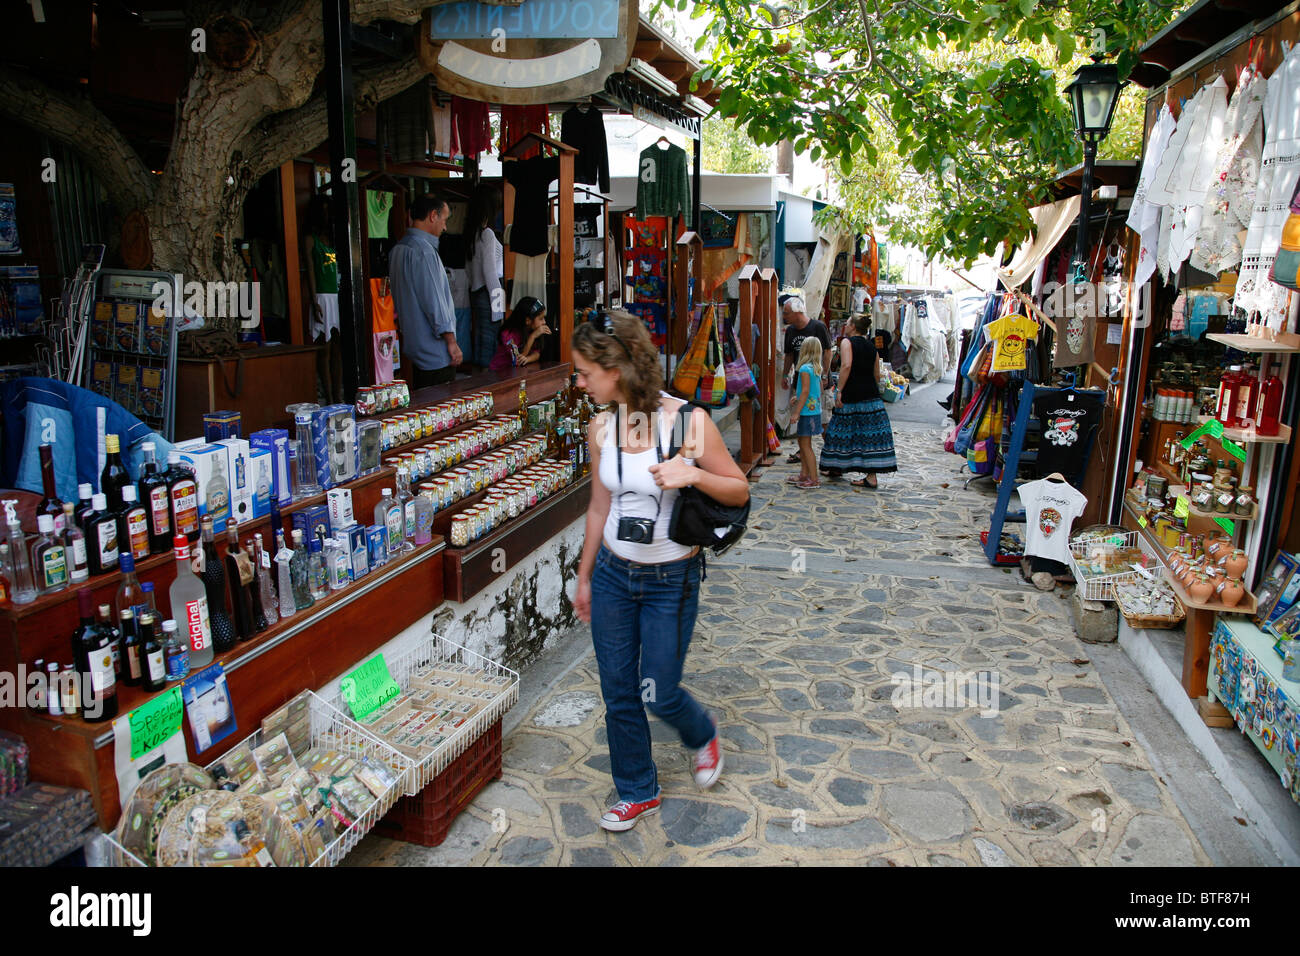 Marché avec des boutiques de souvenirs, Zia, Athènes, Grèce. Banque D'Images